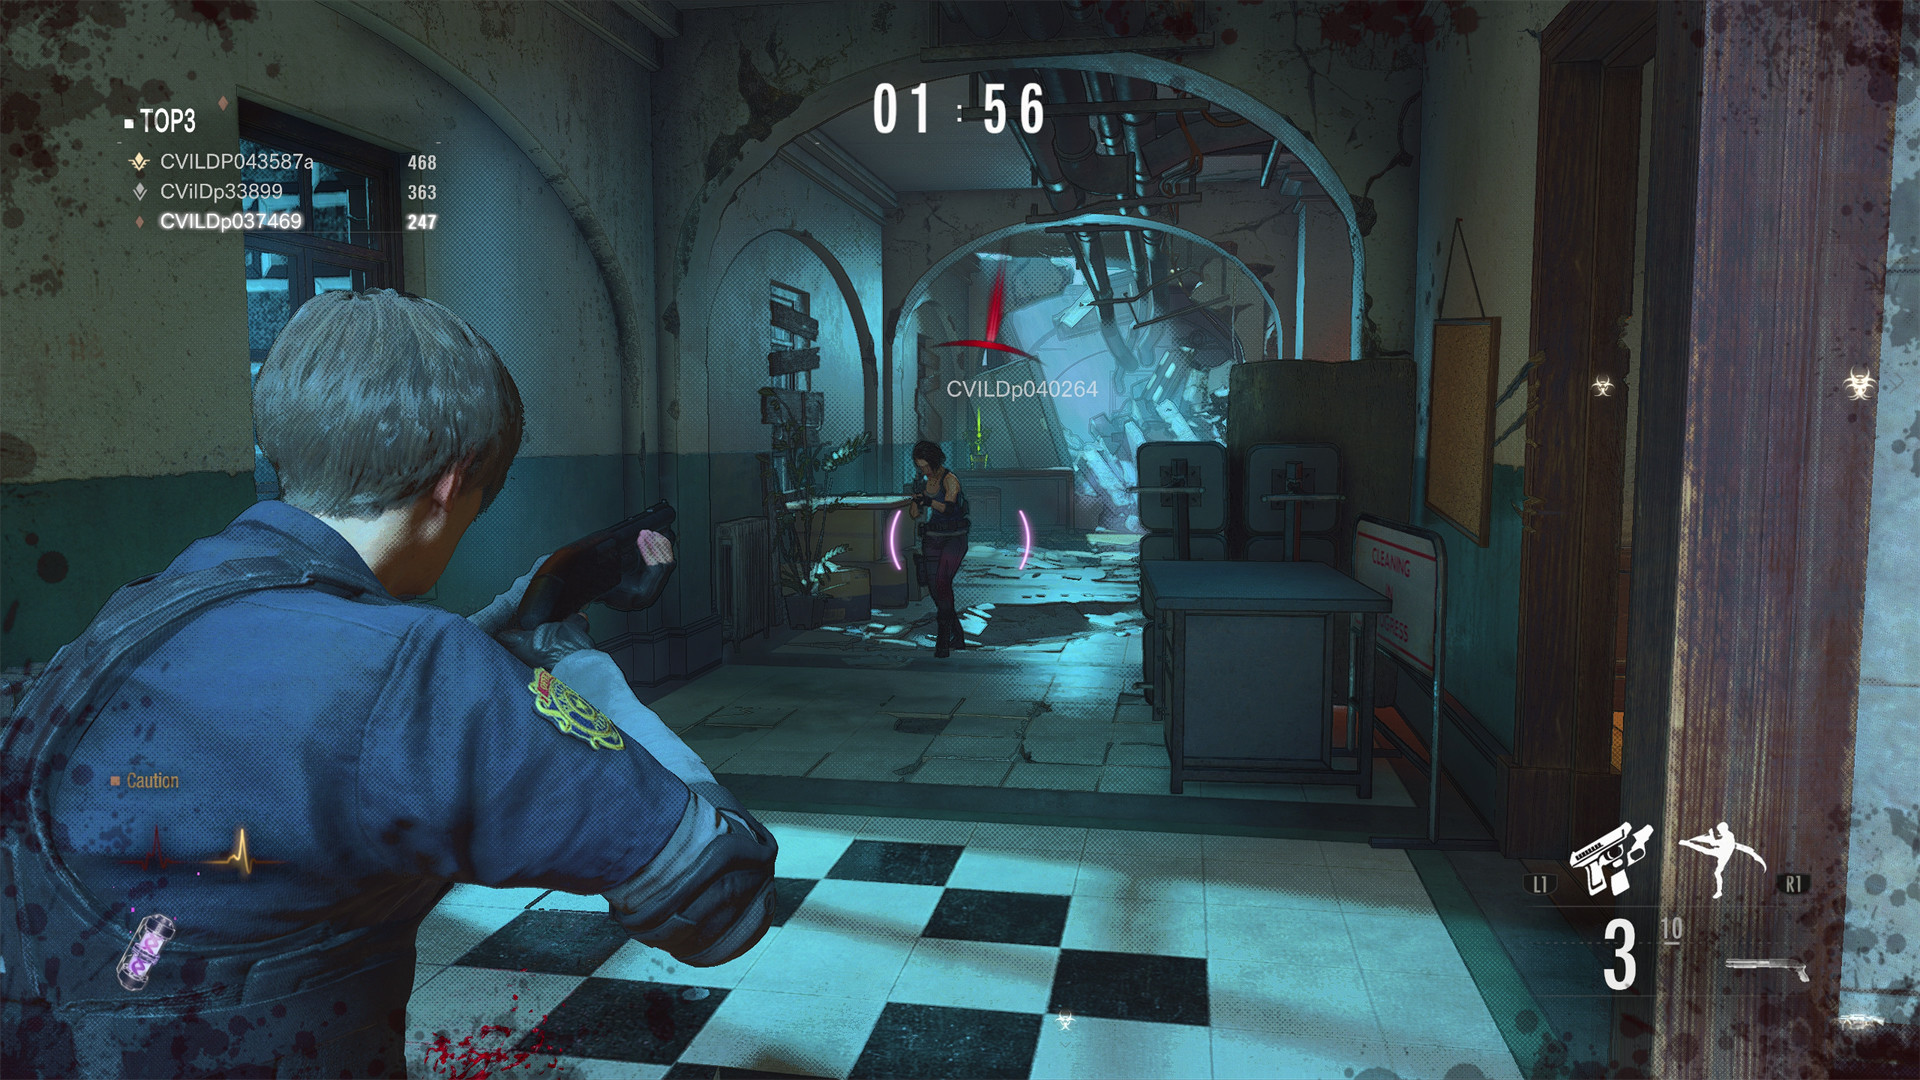 Resident Evil Re:Verse': Novo jogo da franquia é adiado para 2022 - CinePOP